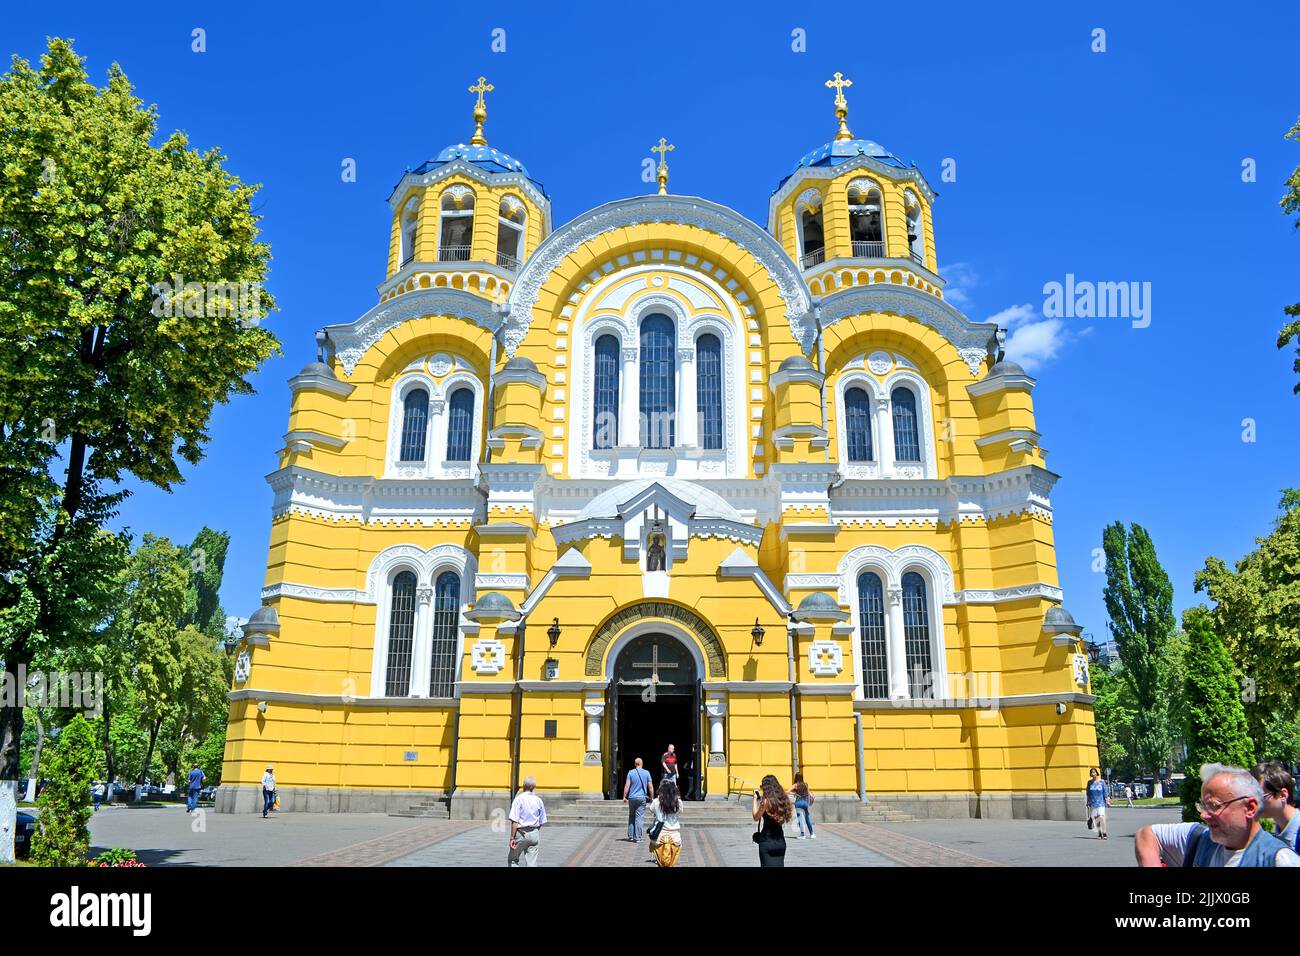 St. Vladimir Kathedrale (auch bekannt als Wolodymyrsky Kathedrale) in Kiew, Ukraine. Es ist eines der wichtigsten Wahrzeichen der Stadt und Mutter Kathedrale der Ukraine. Stockfoto